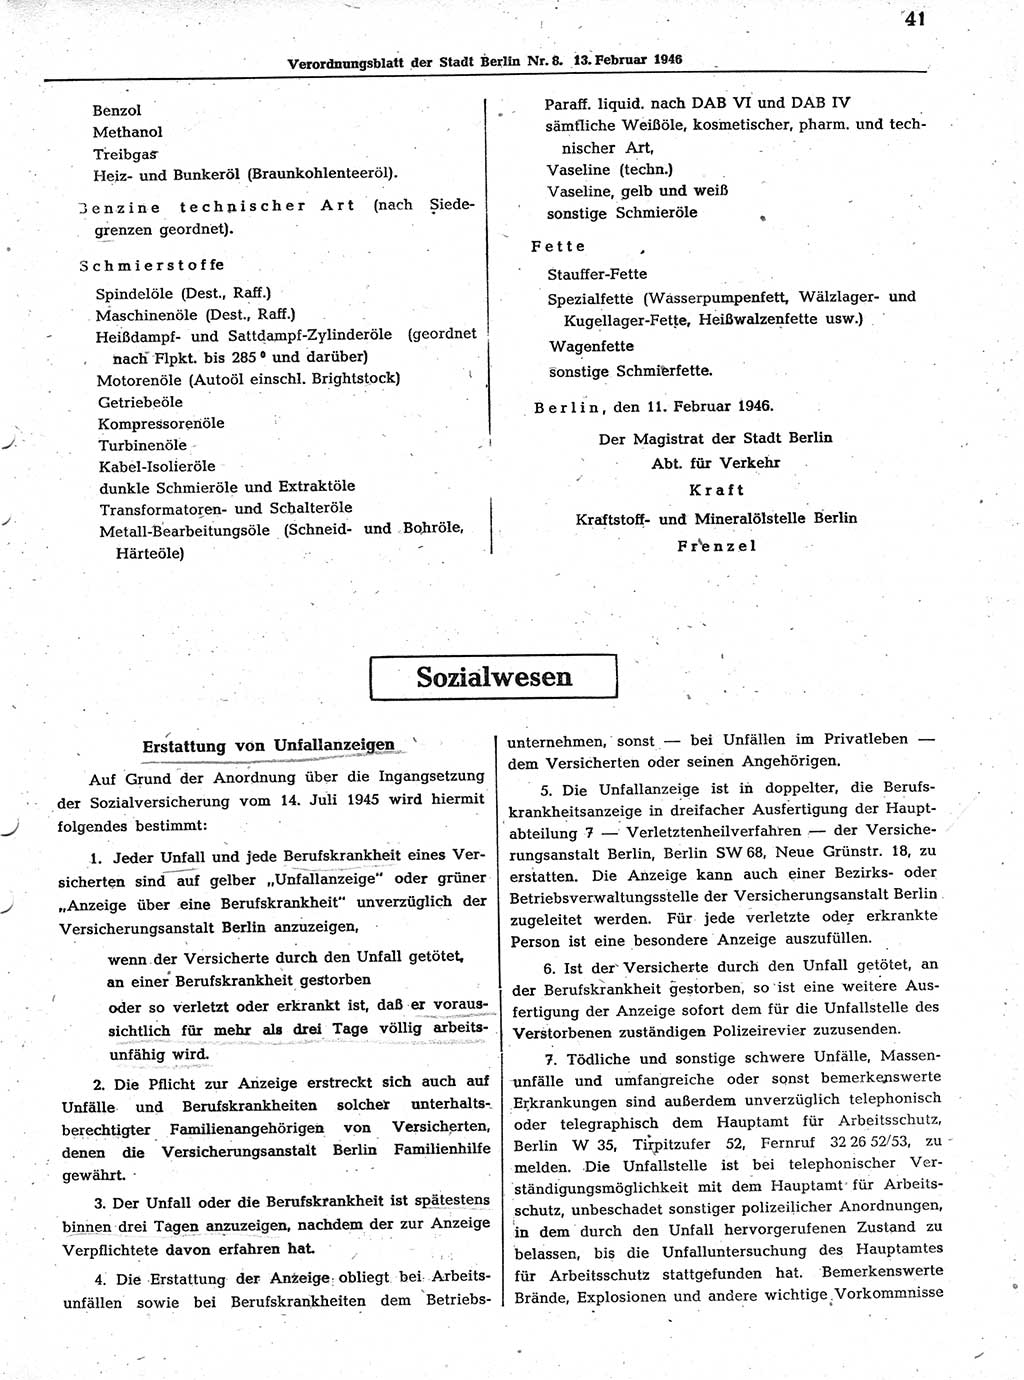 Verordnungsblatt (VOBl.) der Stadt Berlin, für Groß-Berlin 1946, Seite 41 (VOBl. Bln. 1946, S. 41)